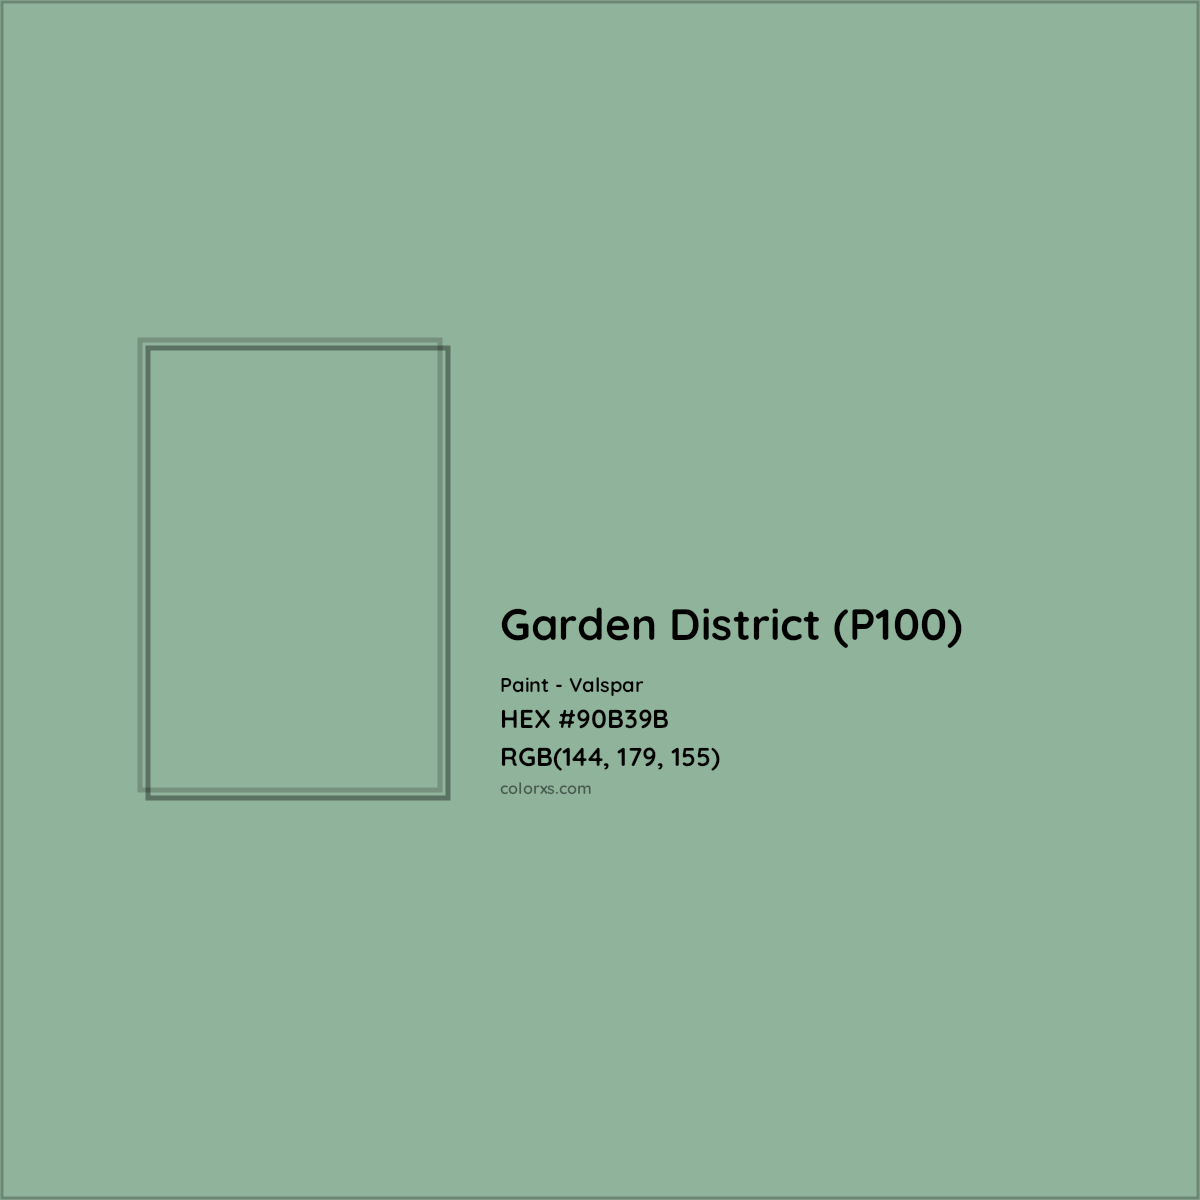 HEX #90B39B Garden District (P100) Paint Valspar - Color Code